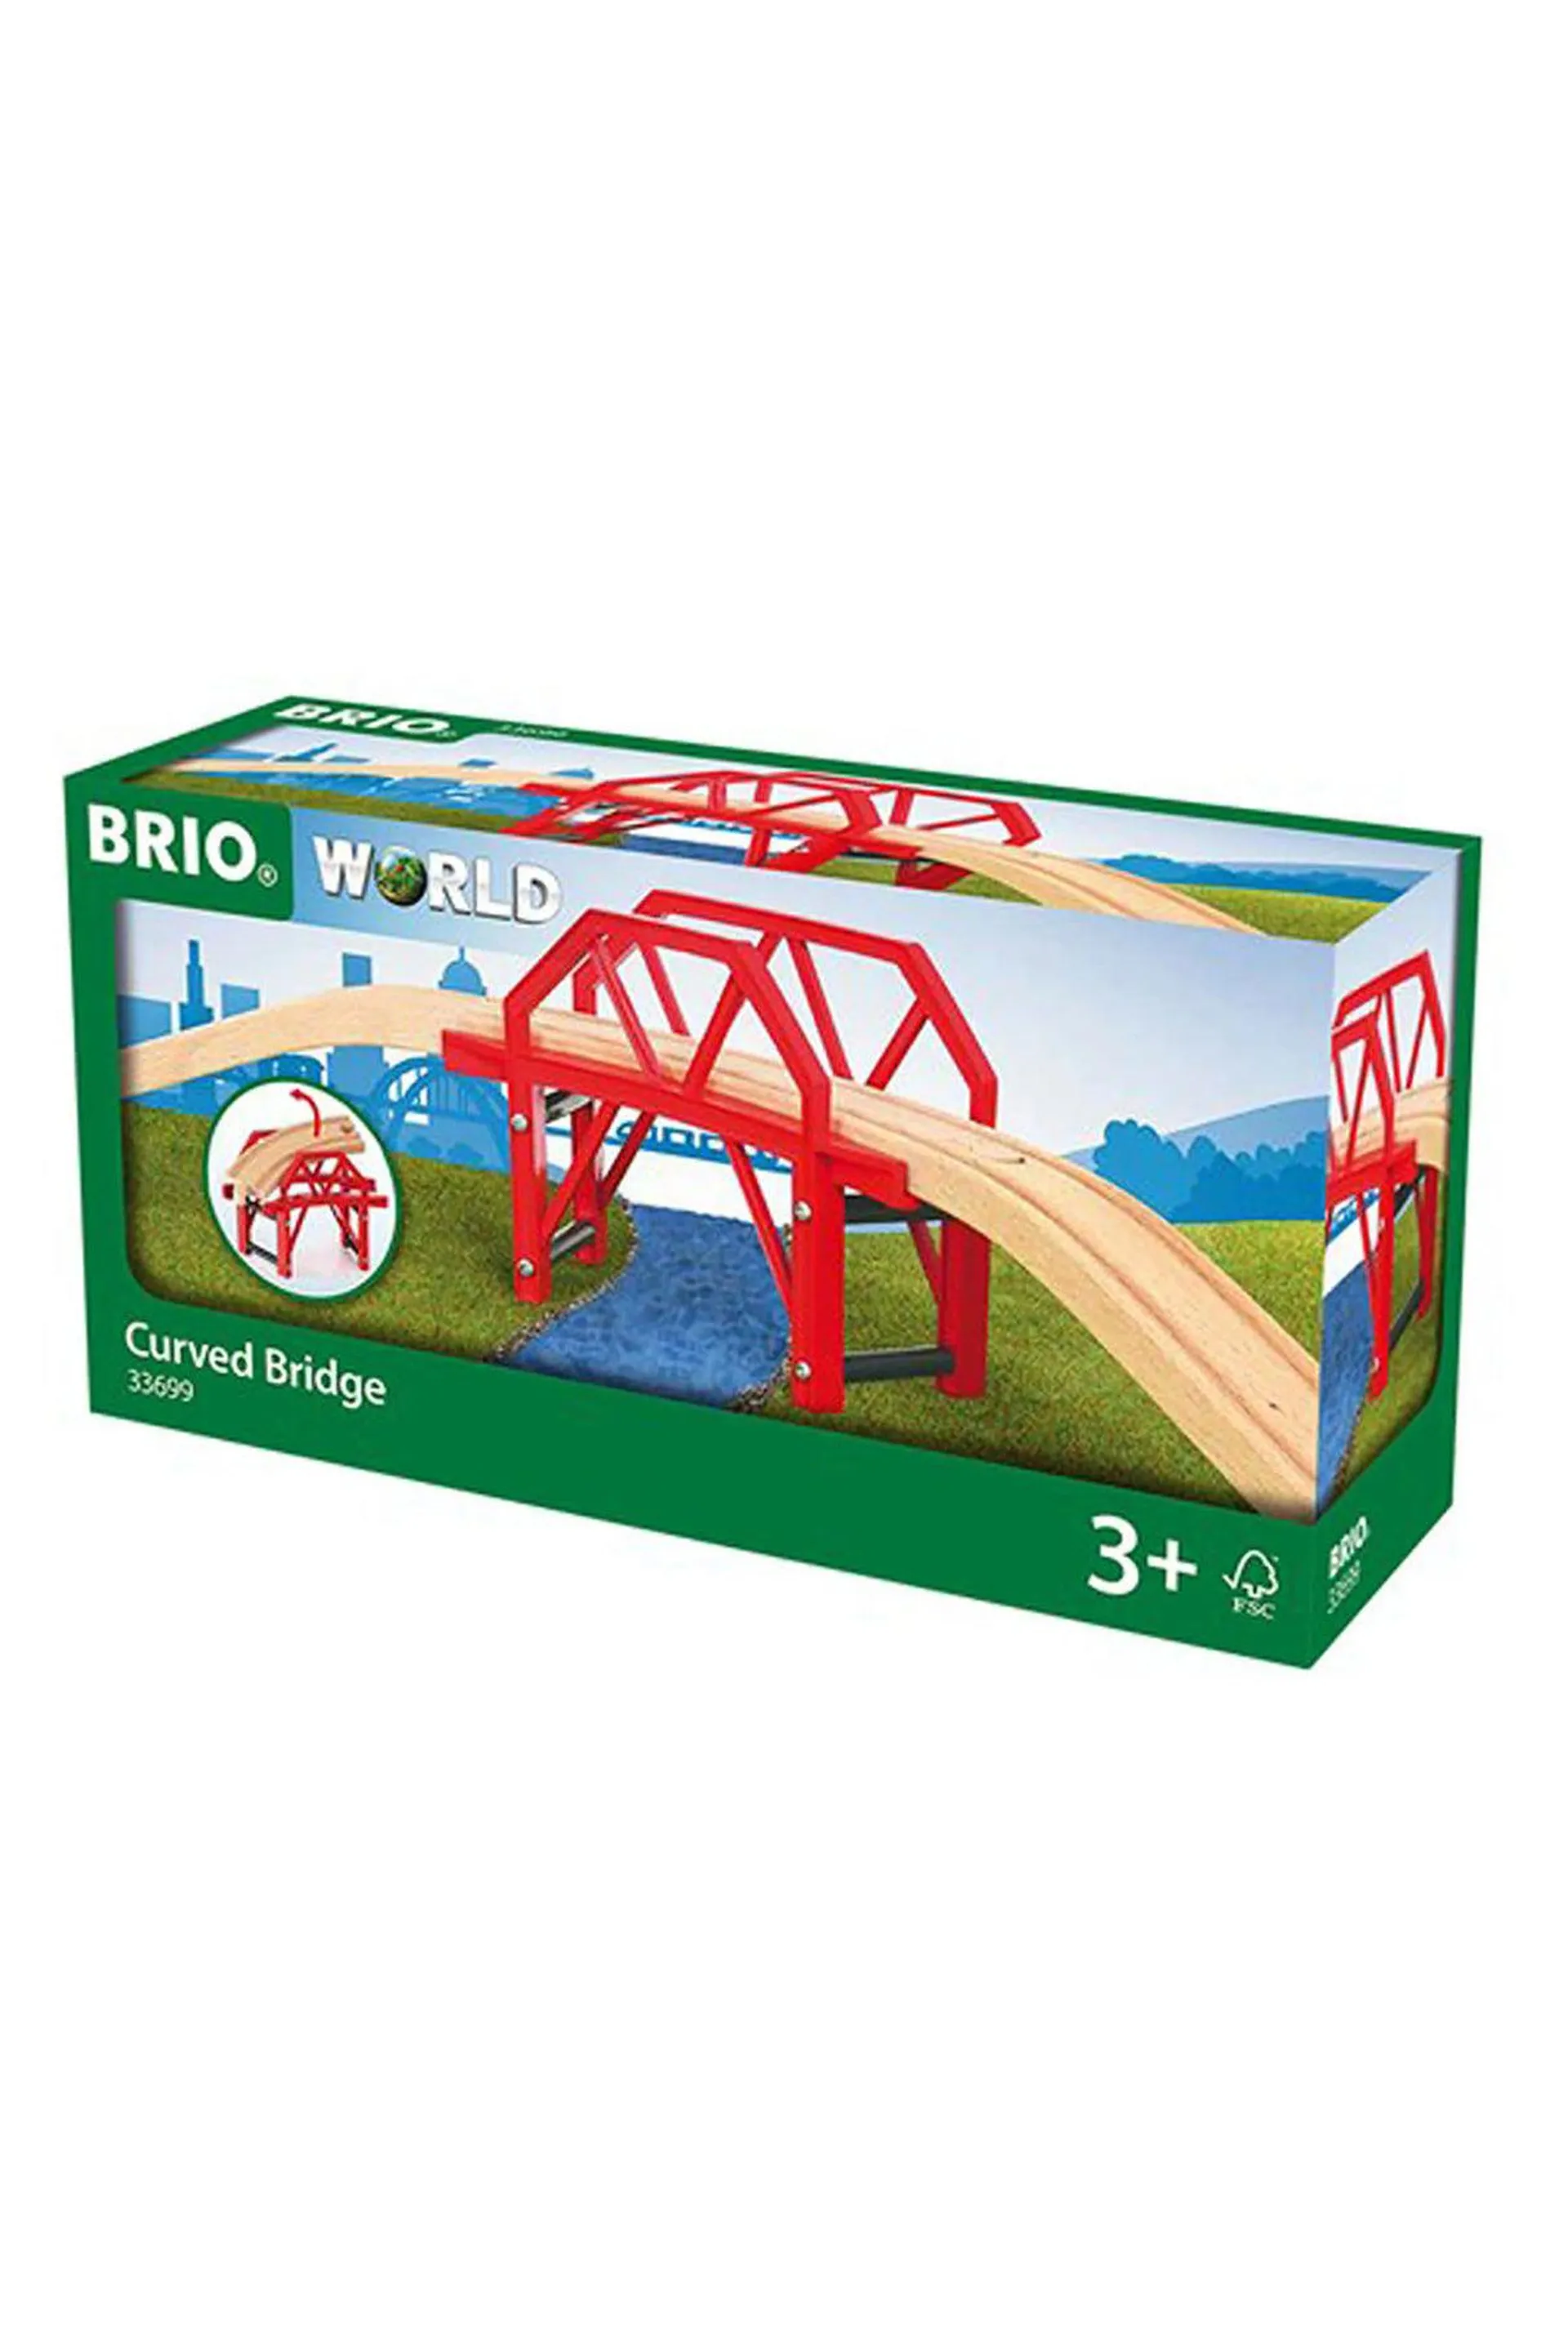 BRIO 33699 Curved Bridge Set